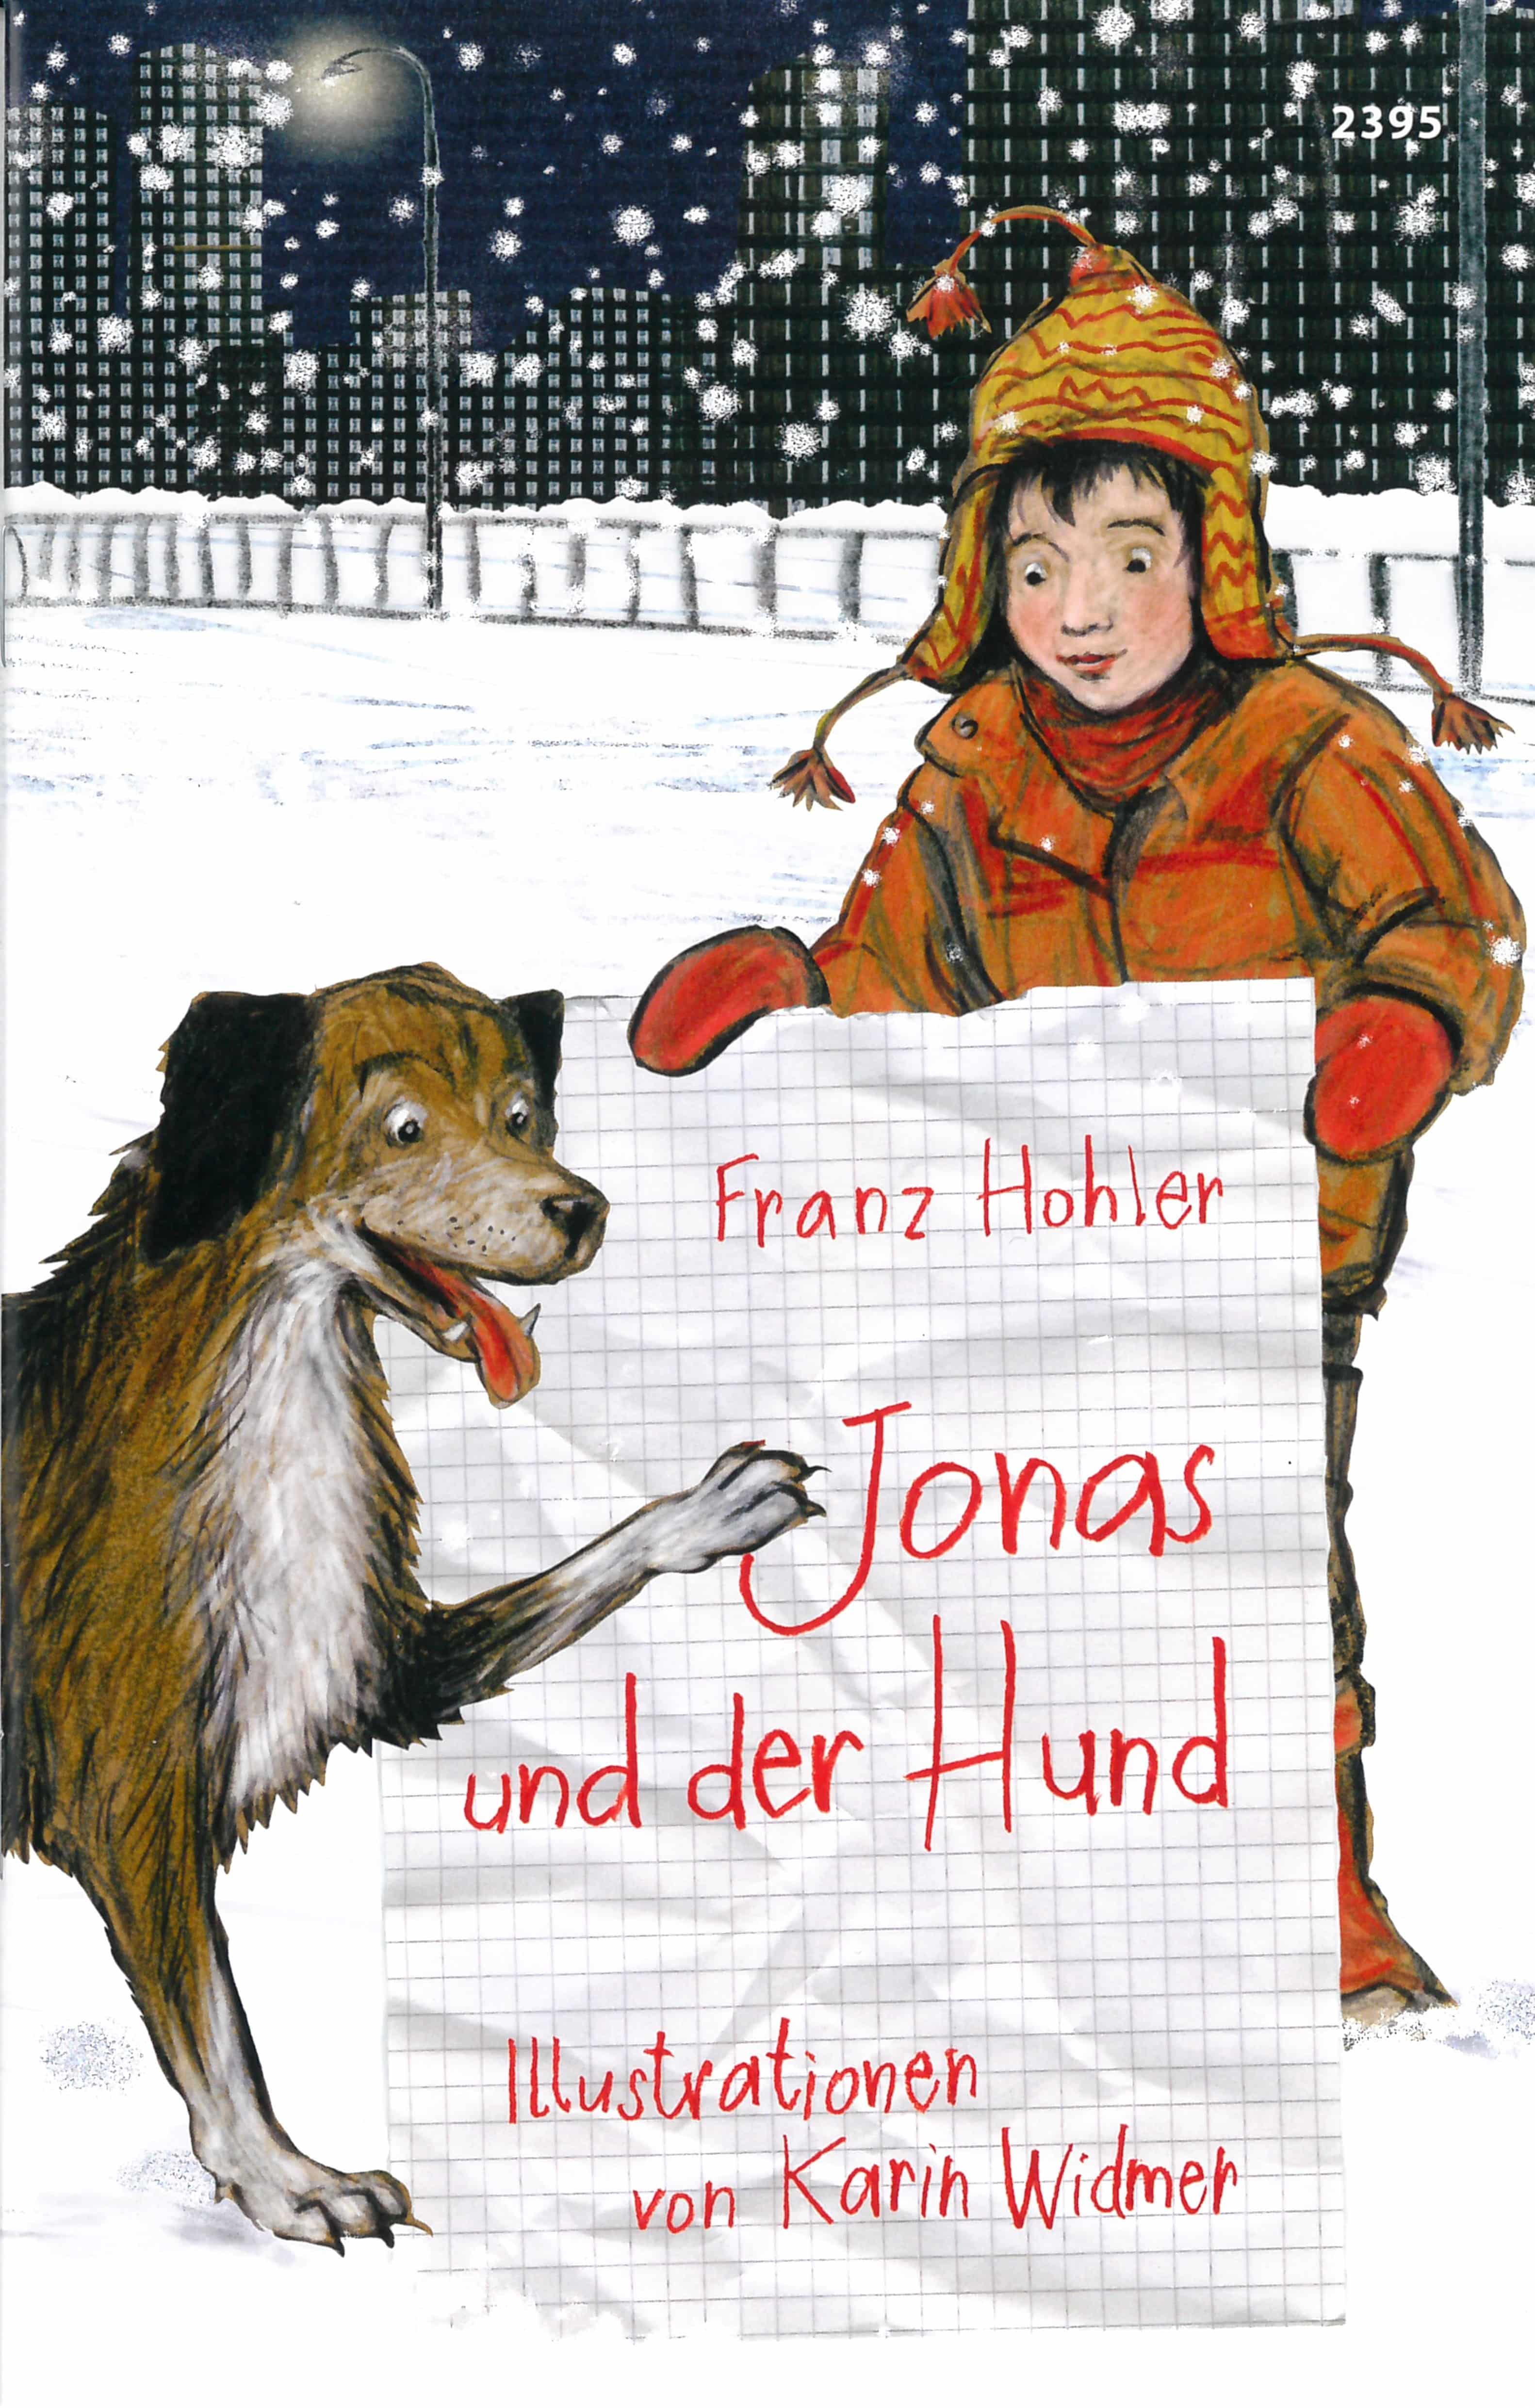 Jonas und der Hund, ein Kinderbuch von Franz Hohler, Illustration von Karin Widmer, SJW Verlag, Wintergeschichte